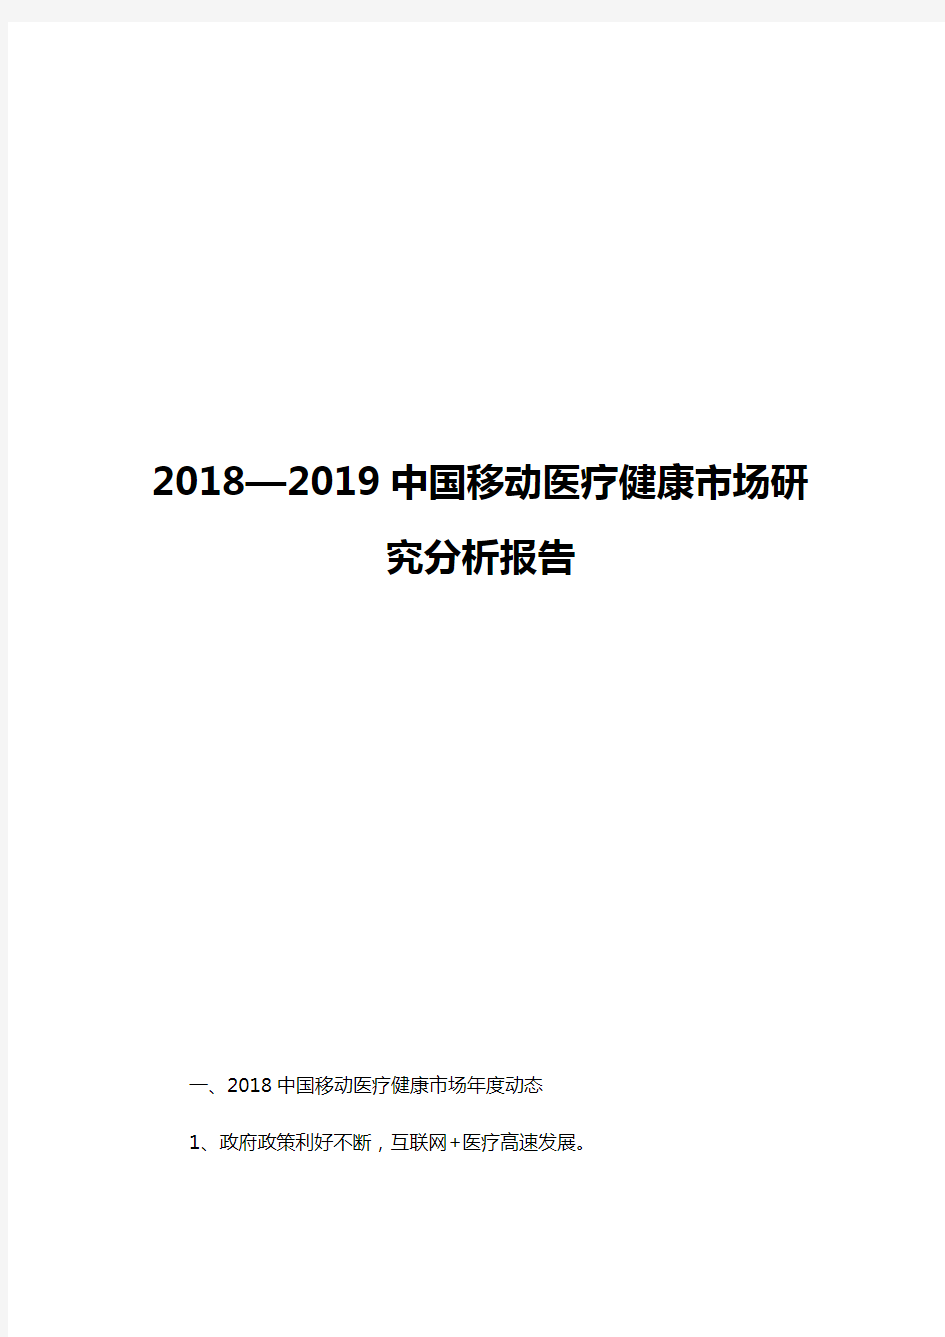 2018-2019中国移动医疗健康市场研究分析报告